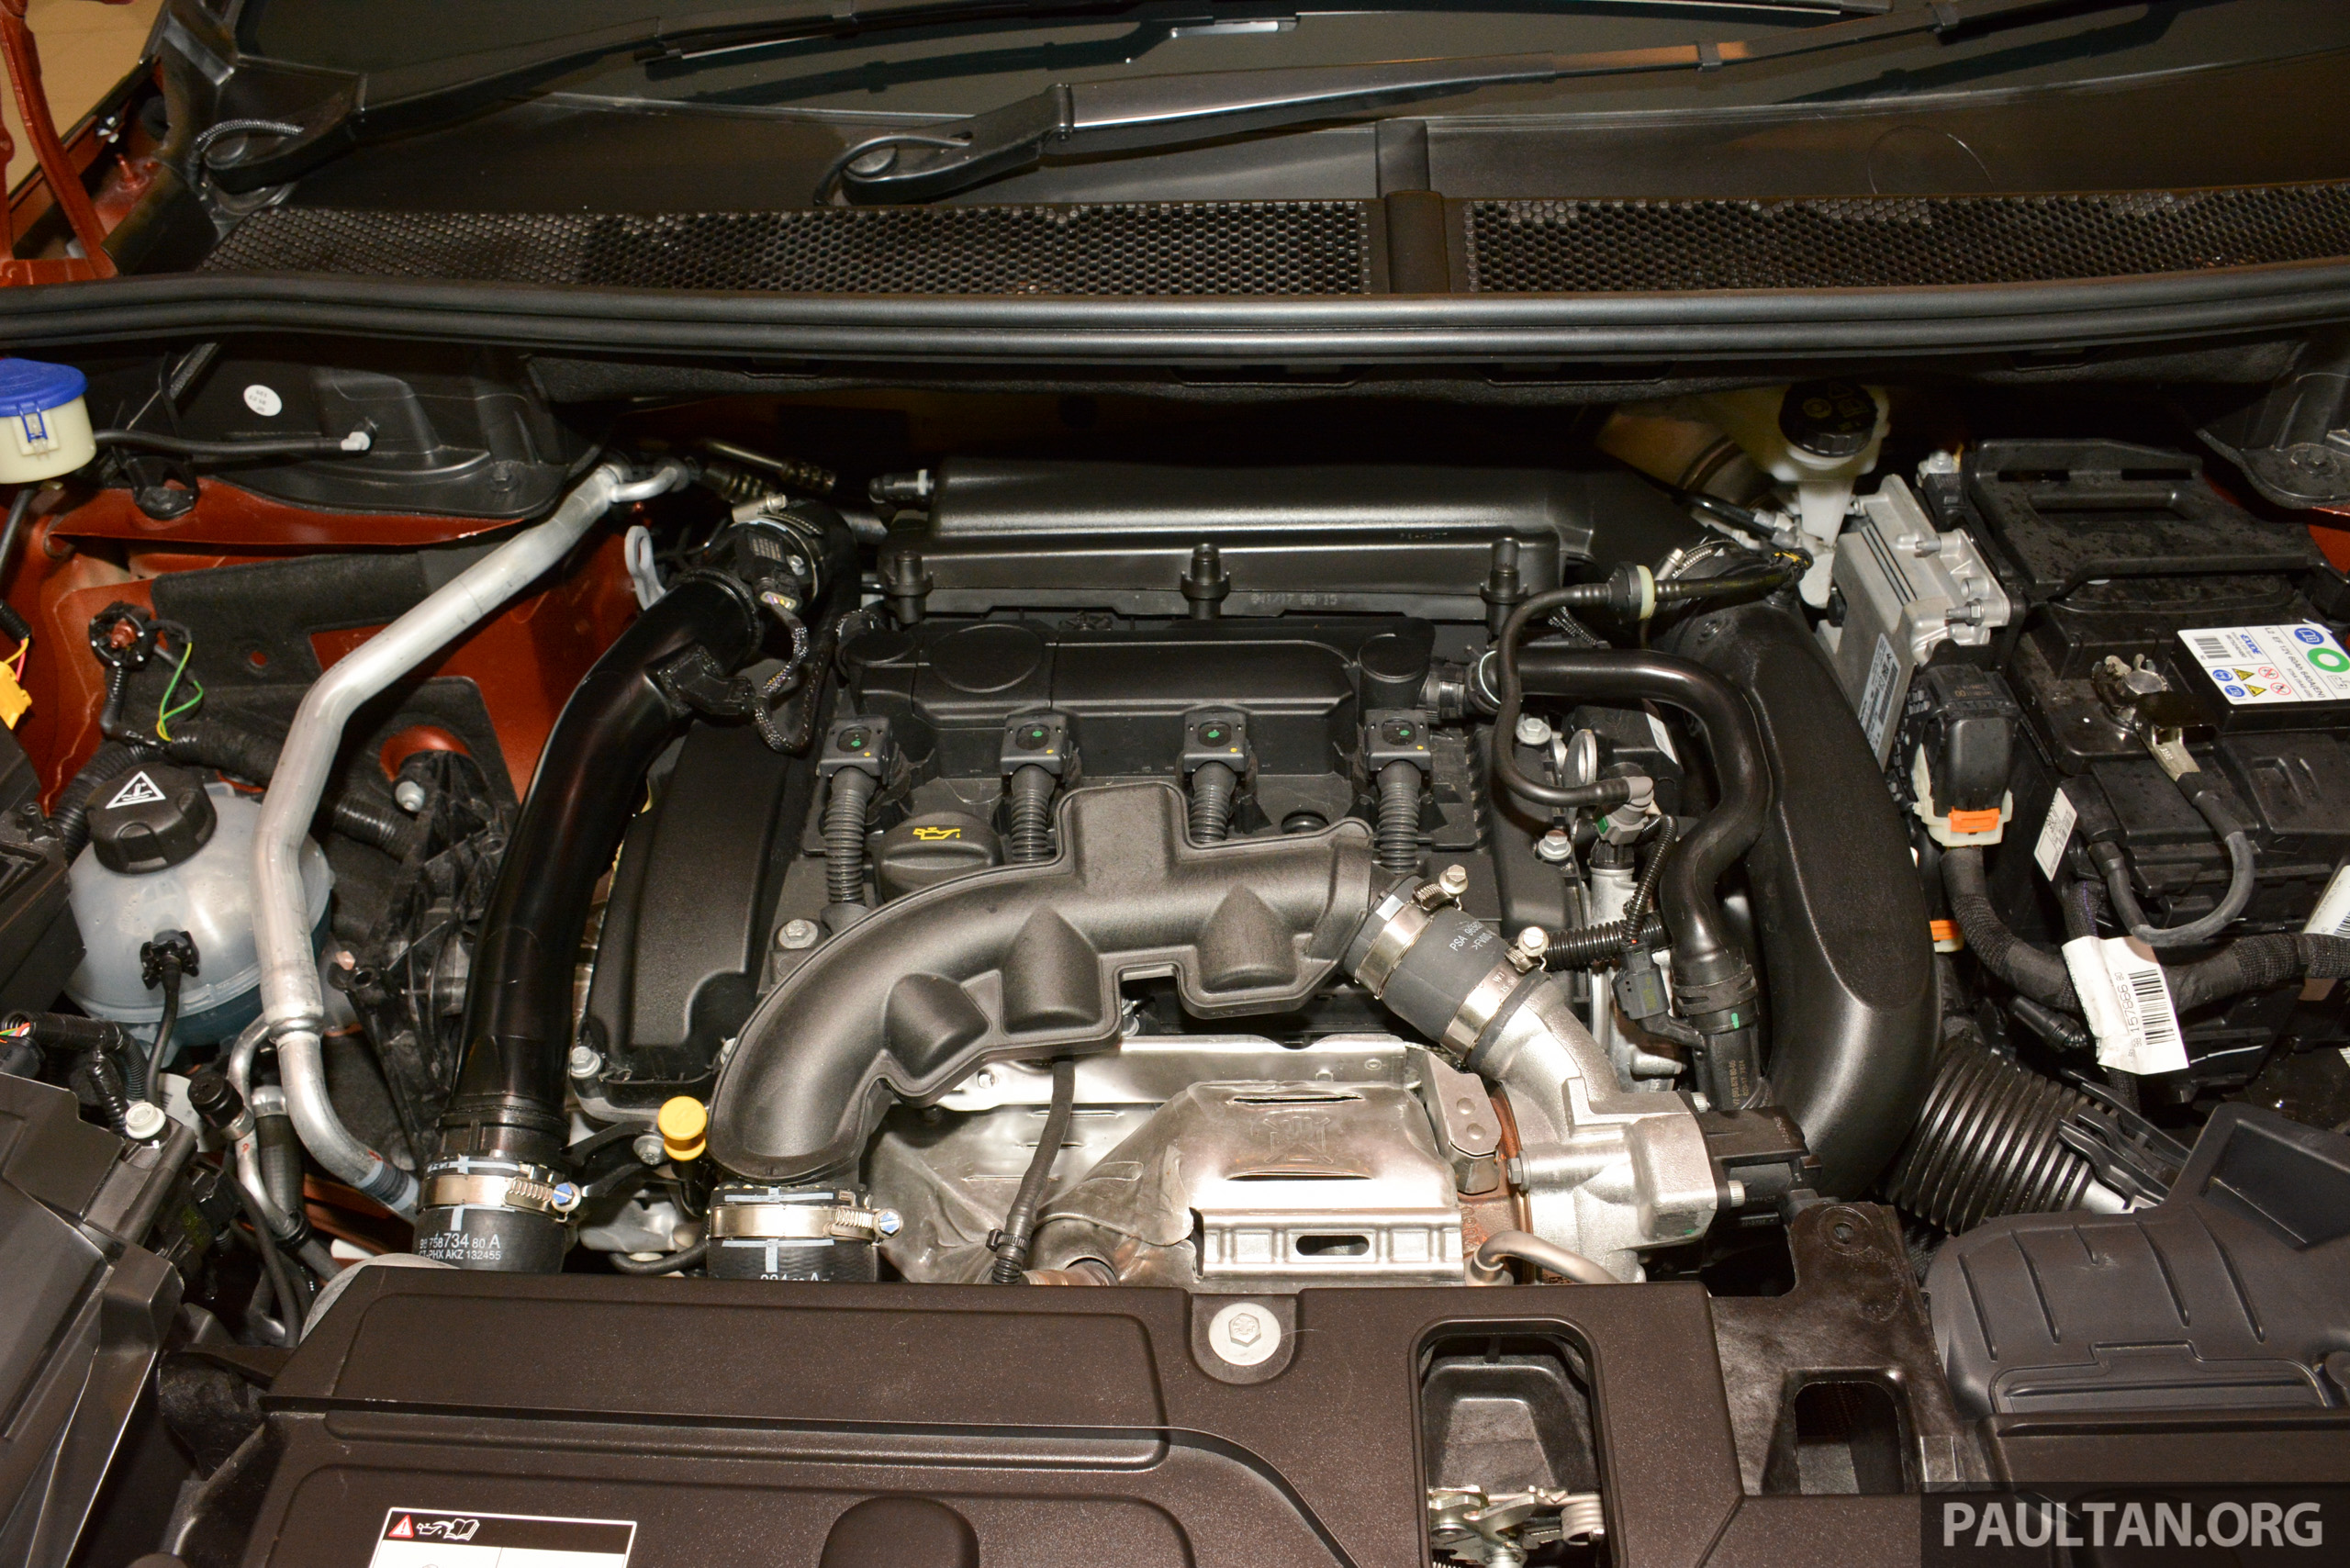 Peugeot 3008 двигатель. Пежо 3008 турбо. Двигатель Пежо 3008. Пежо 3008 1,6 турбо. Пежо 3008 турбо двигатель.